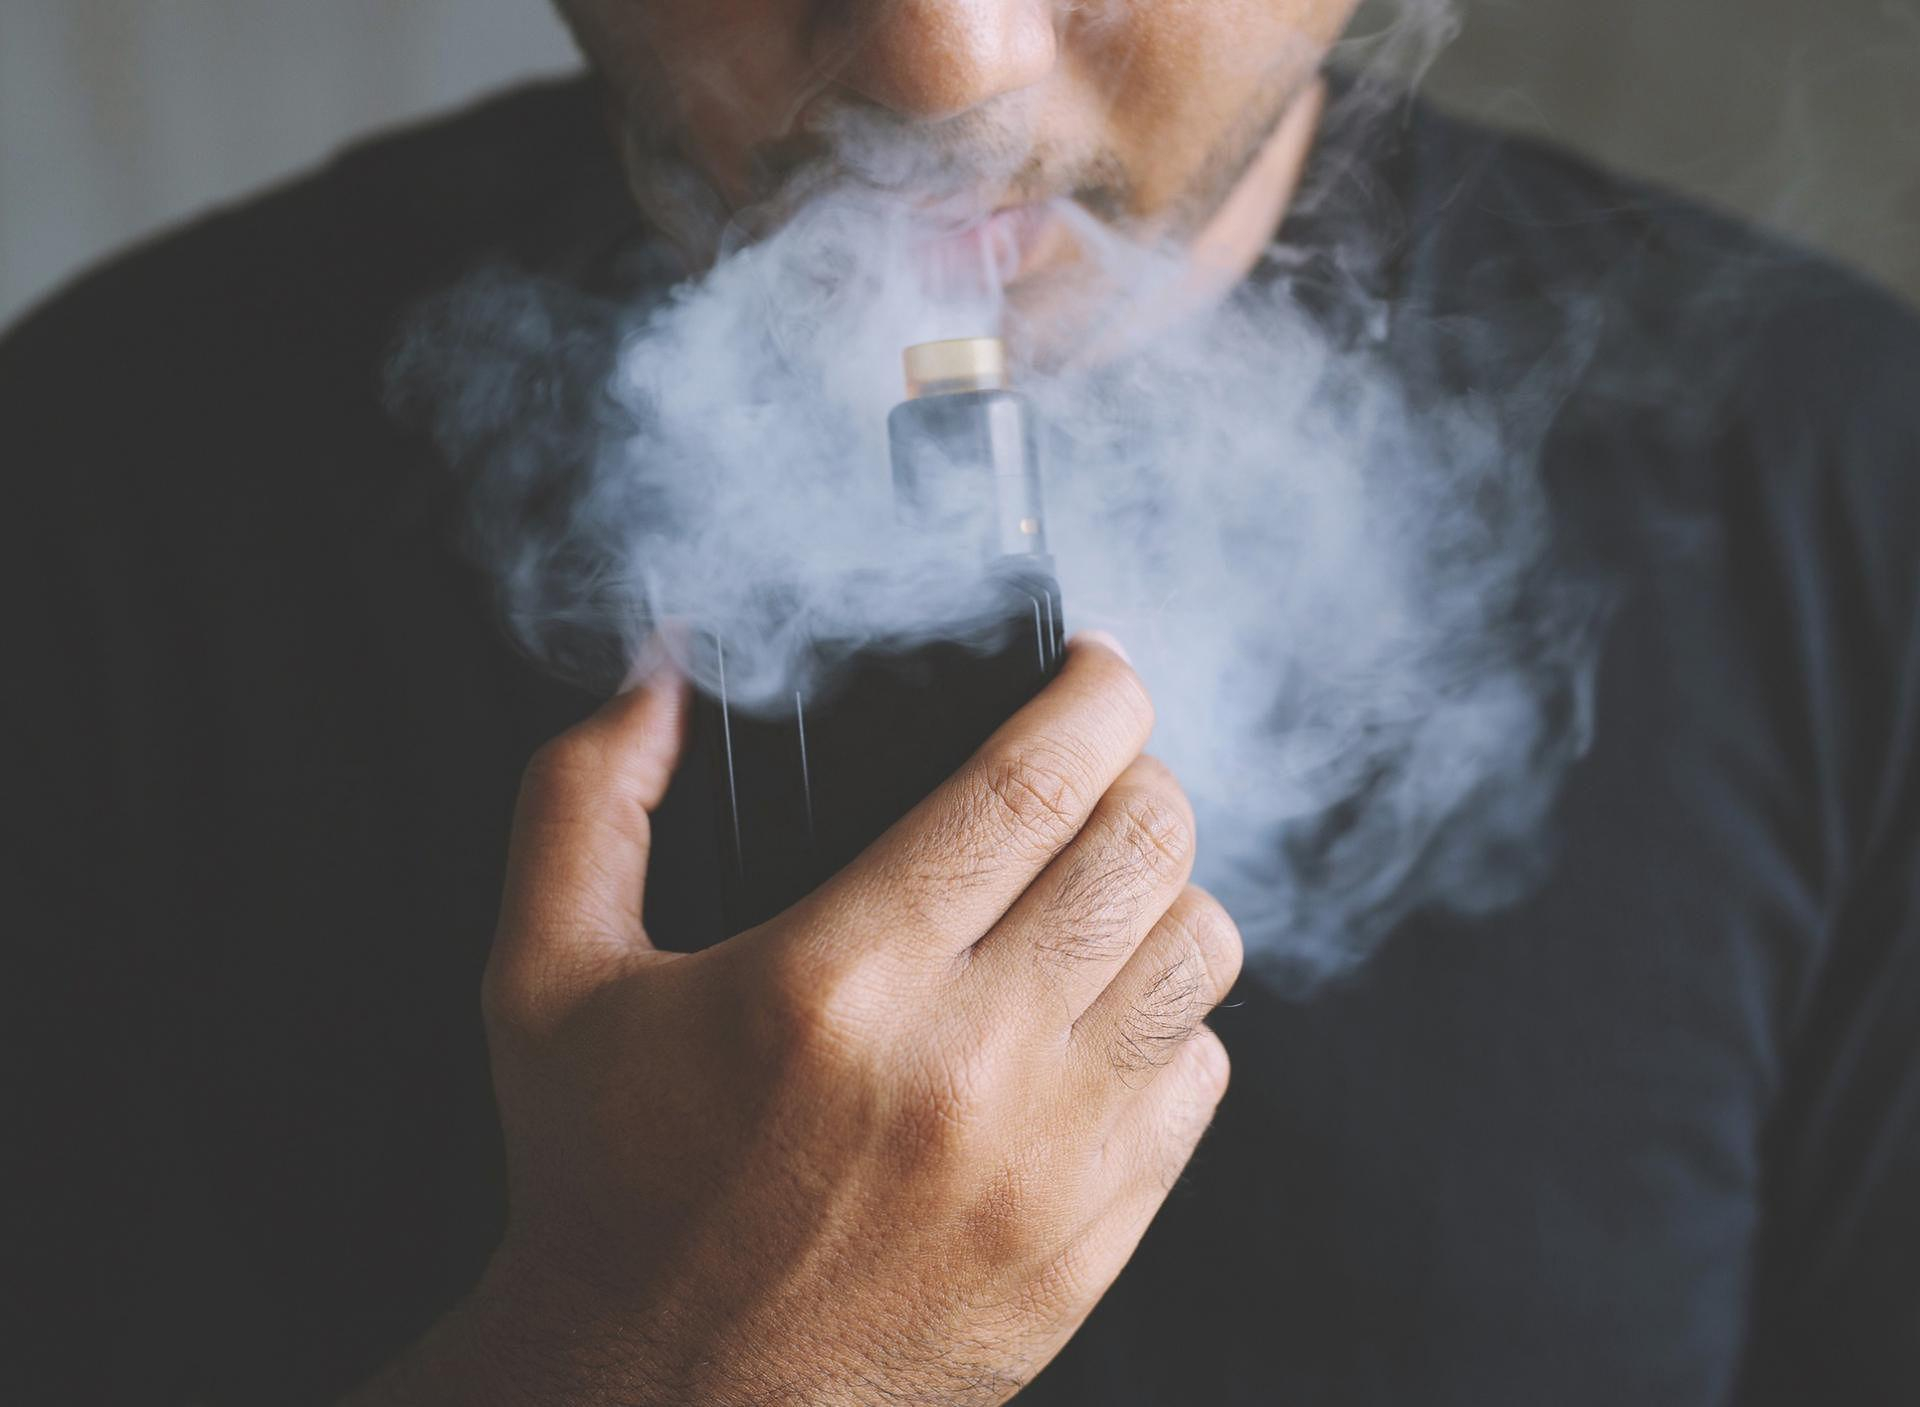 Знайшли несподівану небезпеку нового покоління електронних сигарет: не безневинний вейпінг